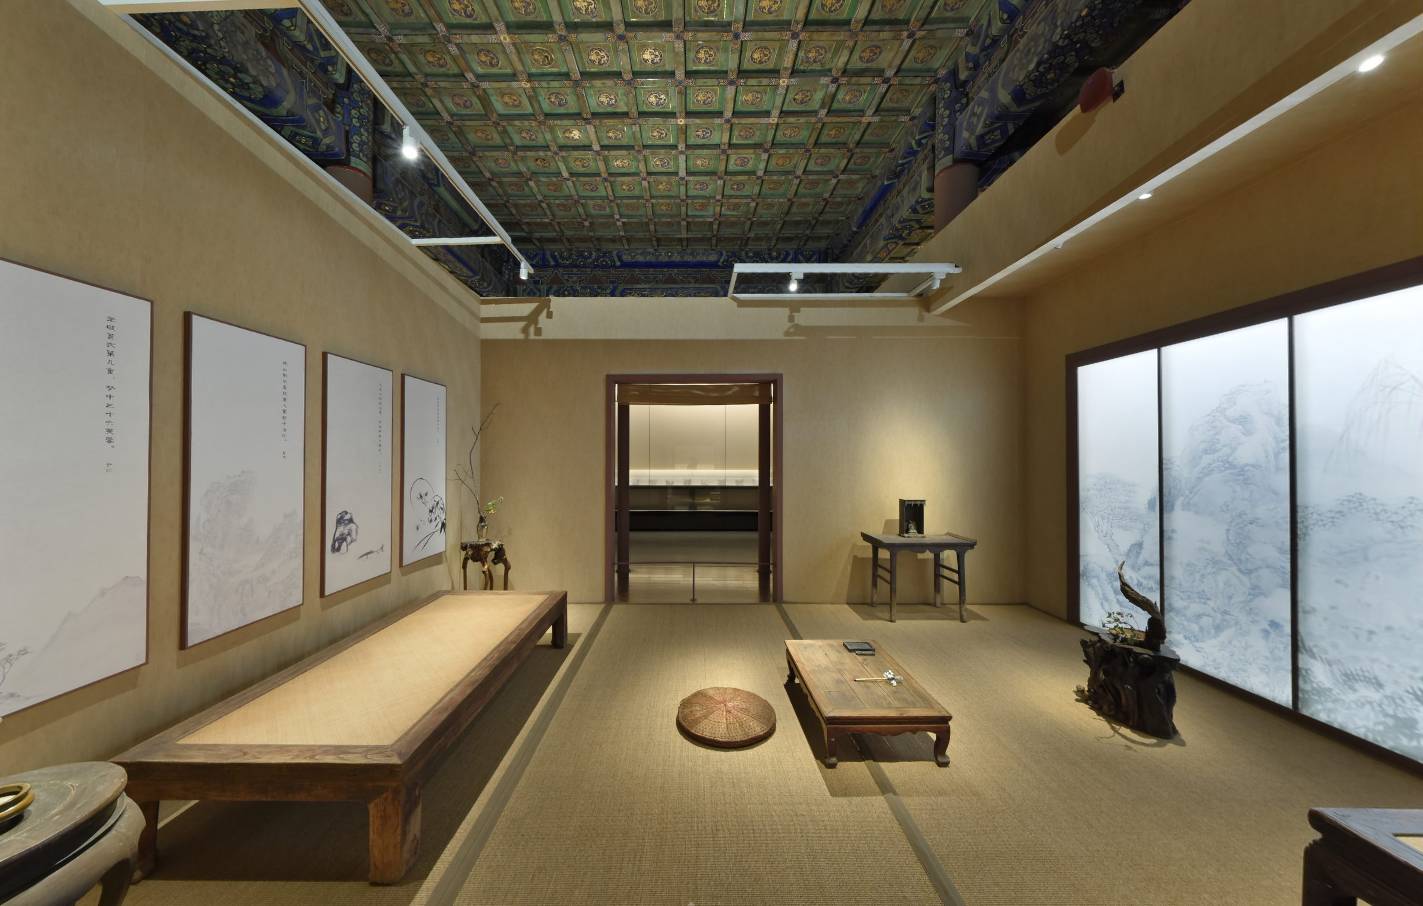 故宫四僧书画展延期至7月26日开启线上全景展厅收录最全高清作品